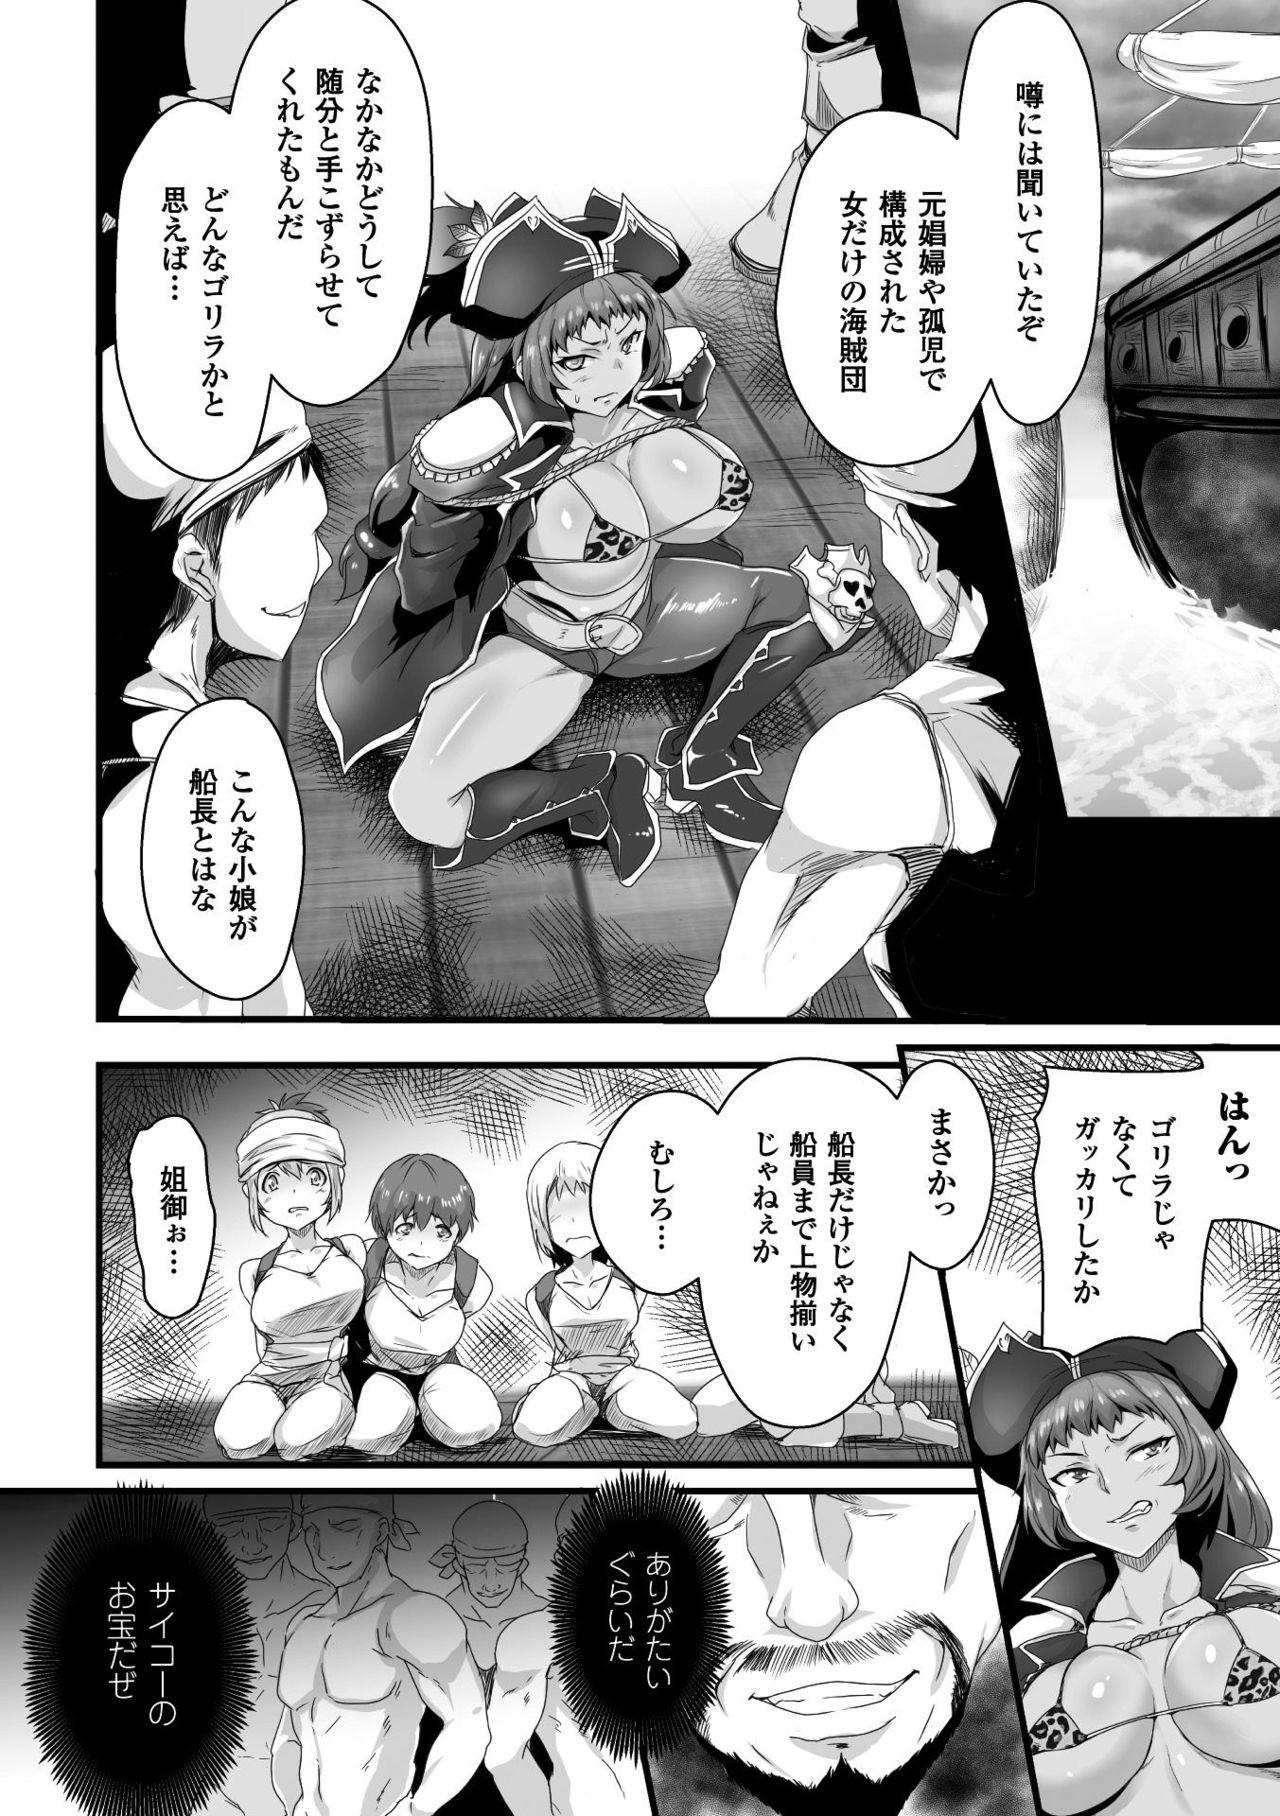 Seigi no Heroine Kangoku File Vol. 15 61